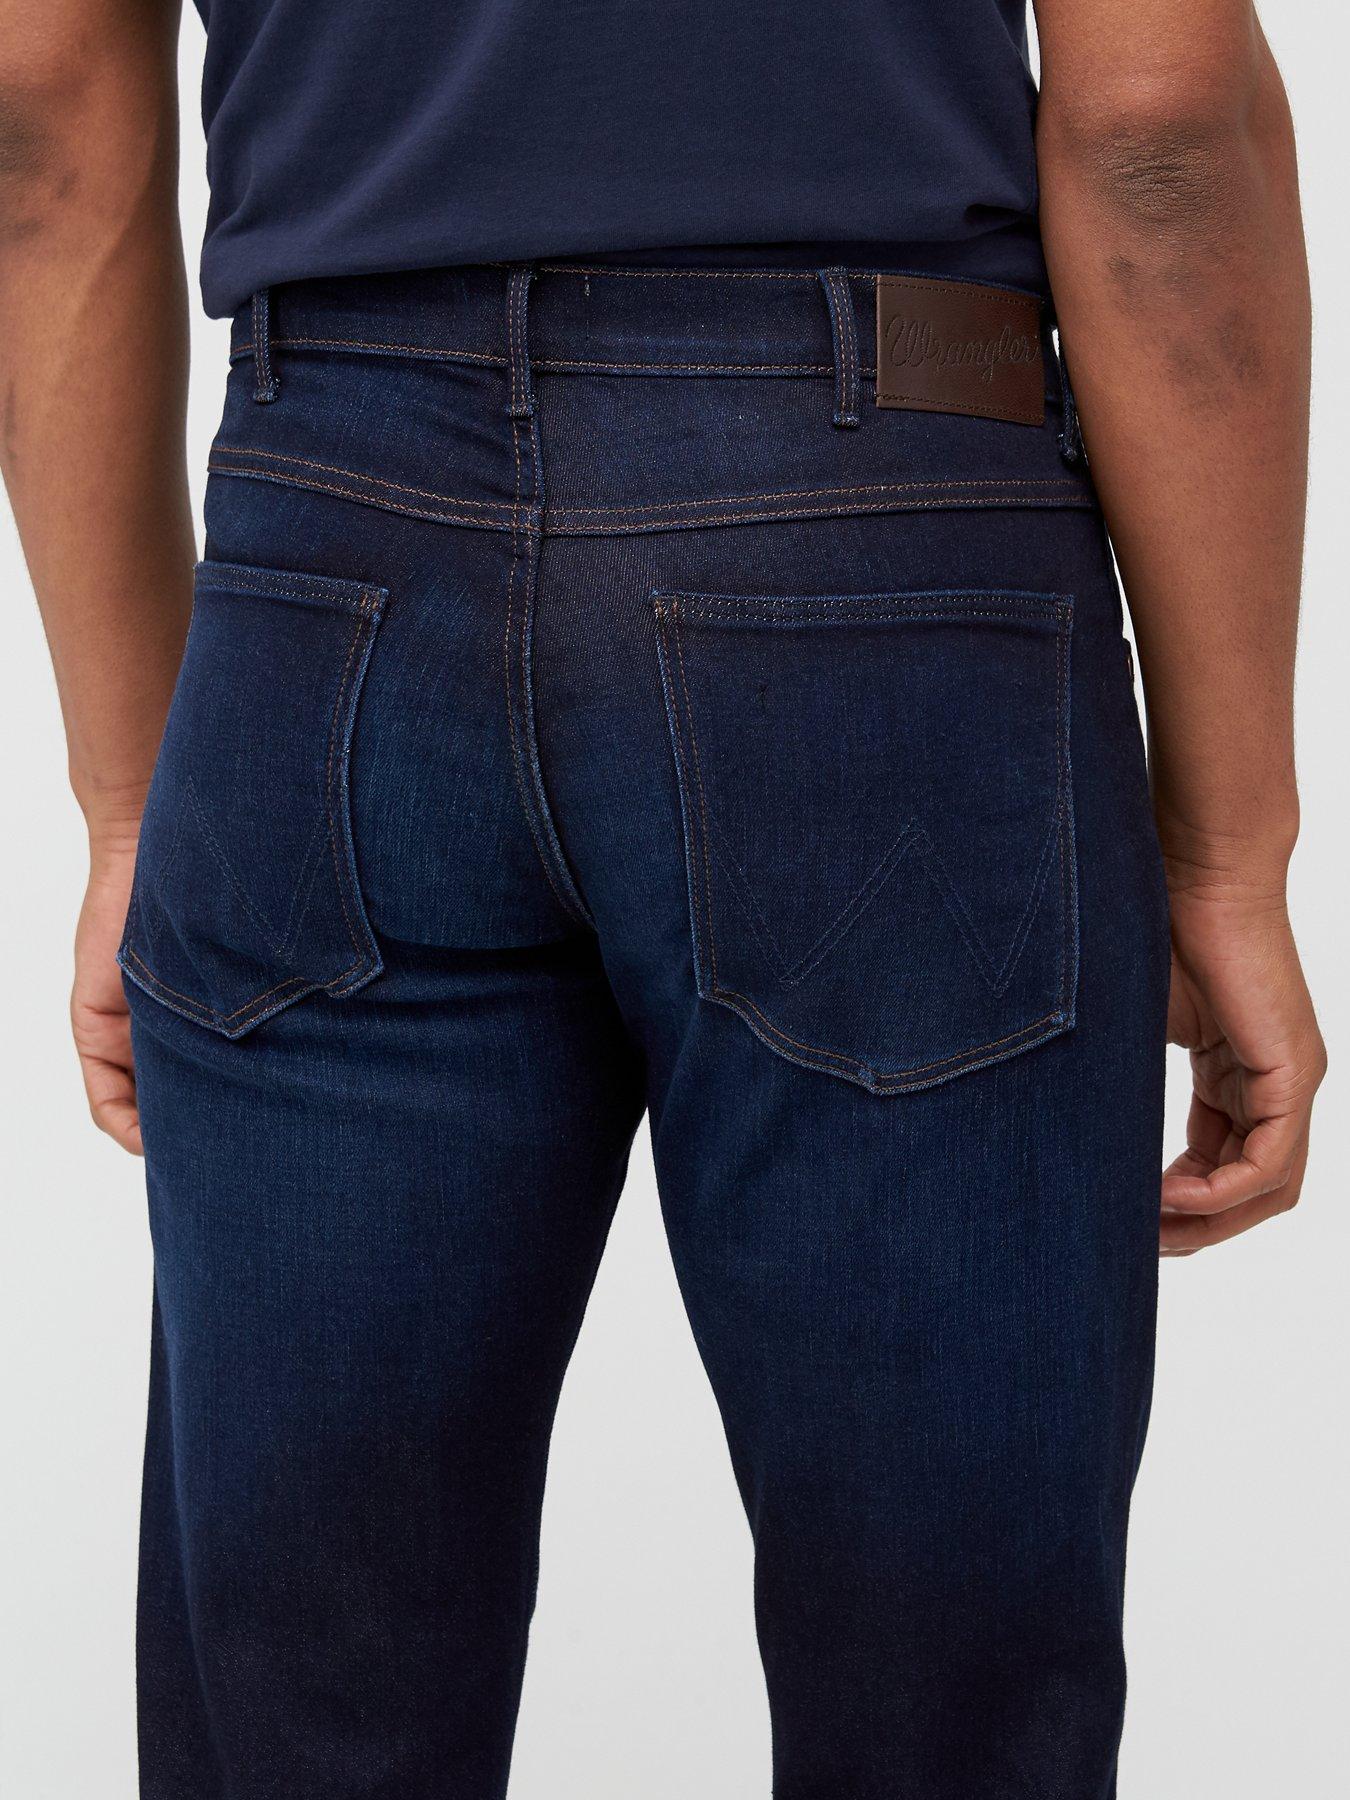 wrangler arizona soft luxe jeans